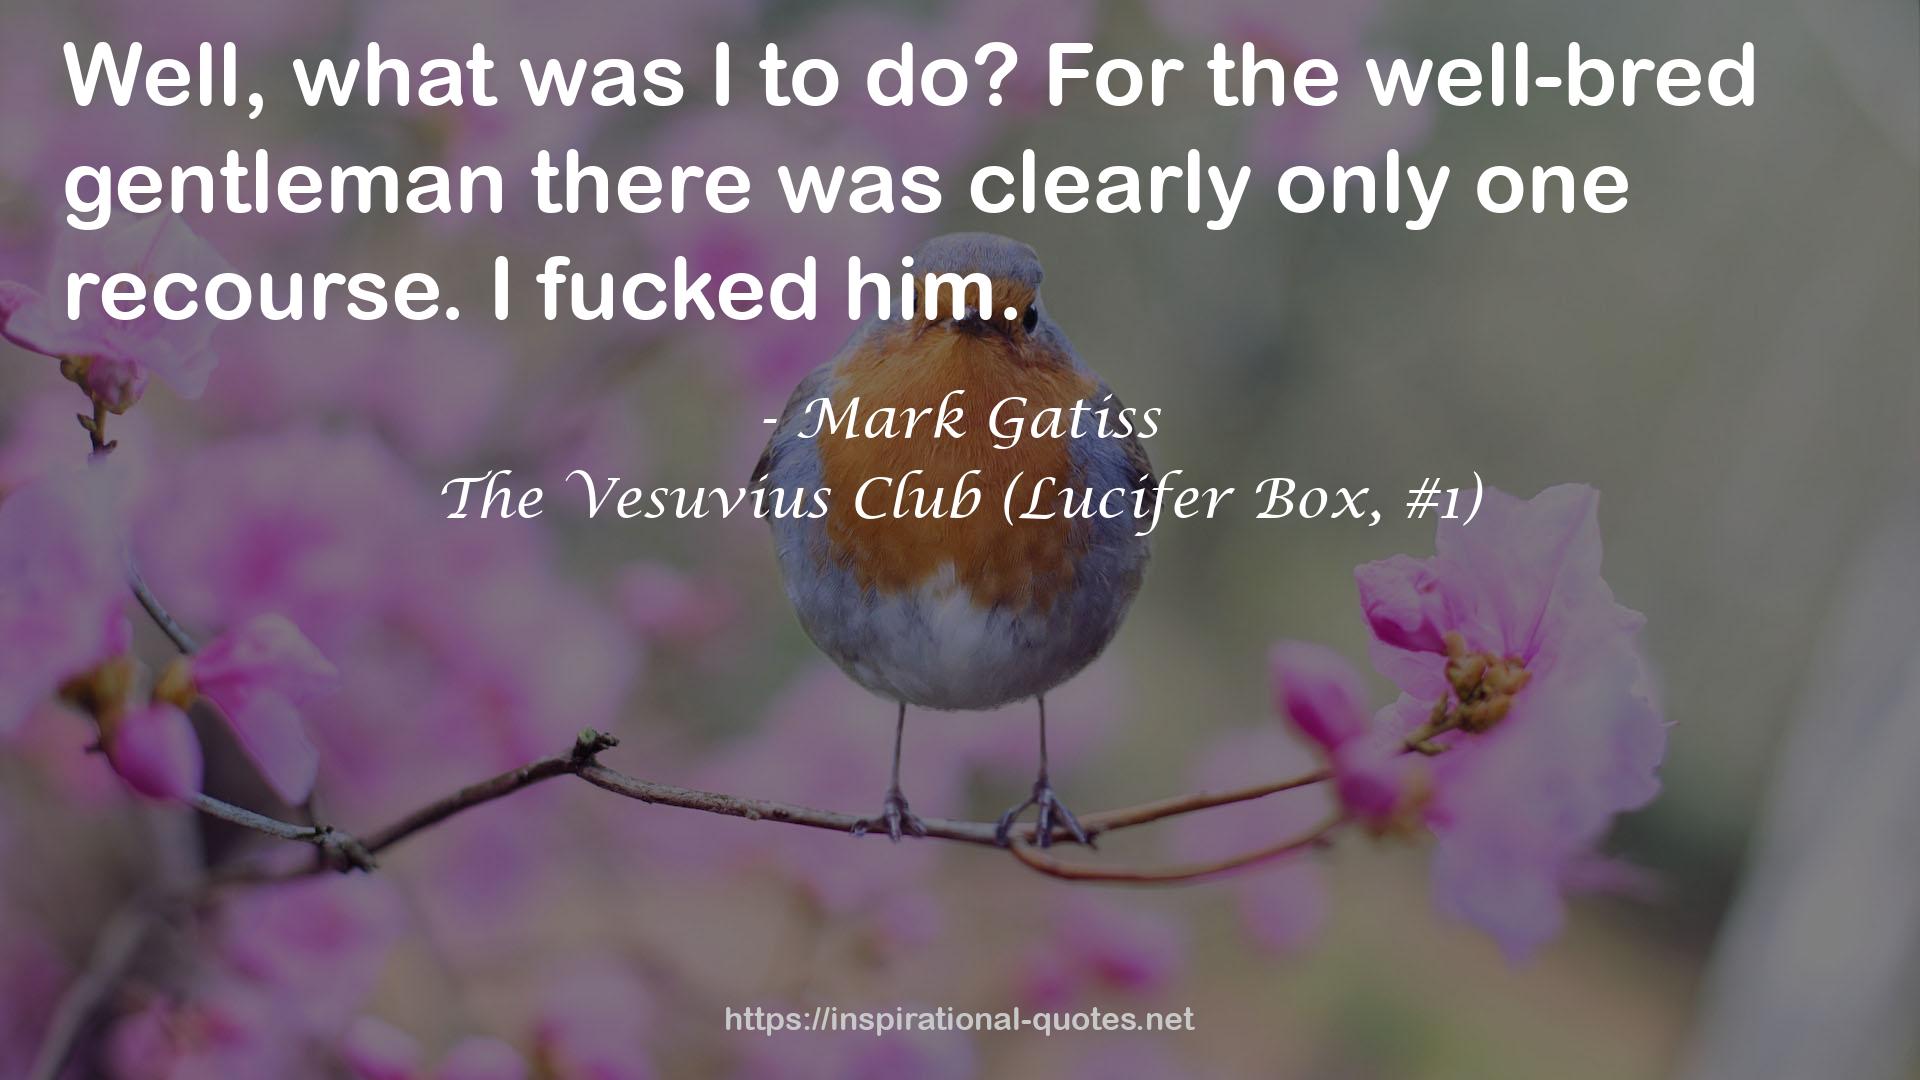 The Vesuvius Club (Lucifer Box, #1) QUOTES